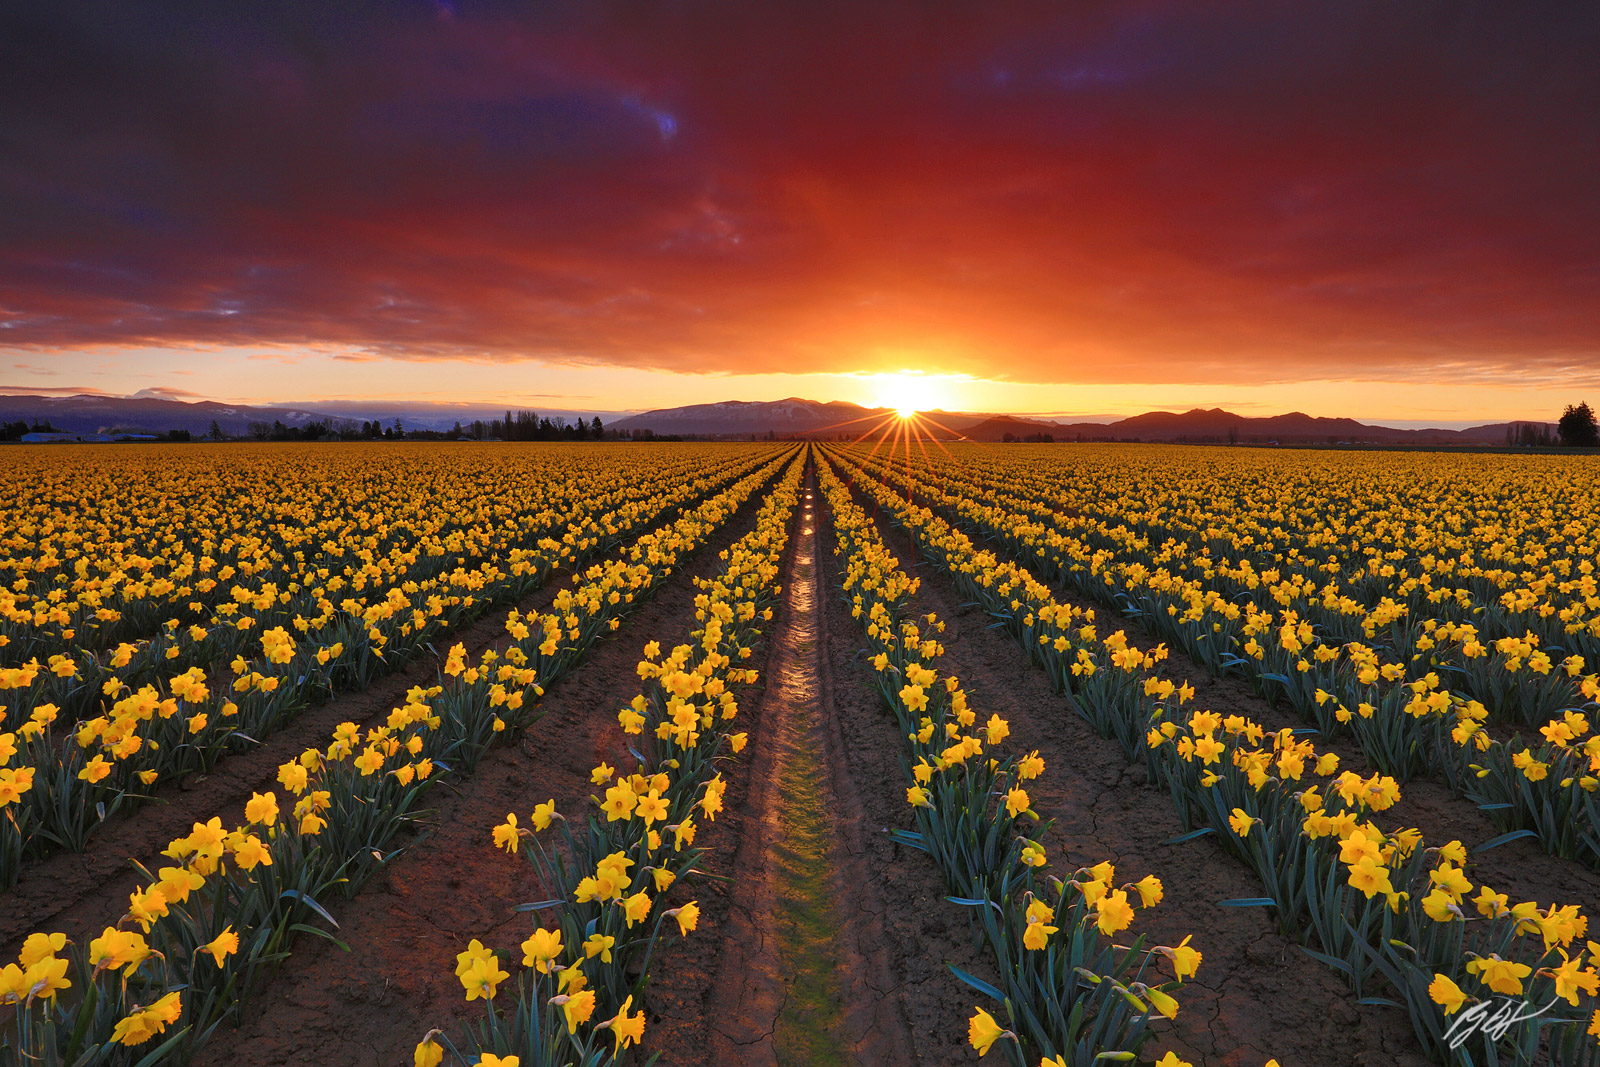 Sunrise in the Daffodil Fields,  Roozengaarde Fields in Skagit Valley in Washington